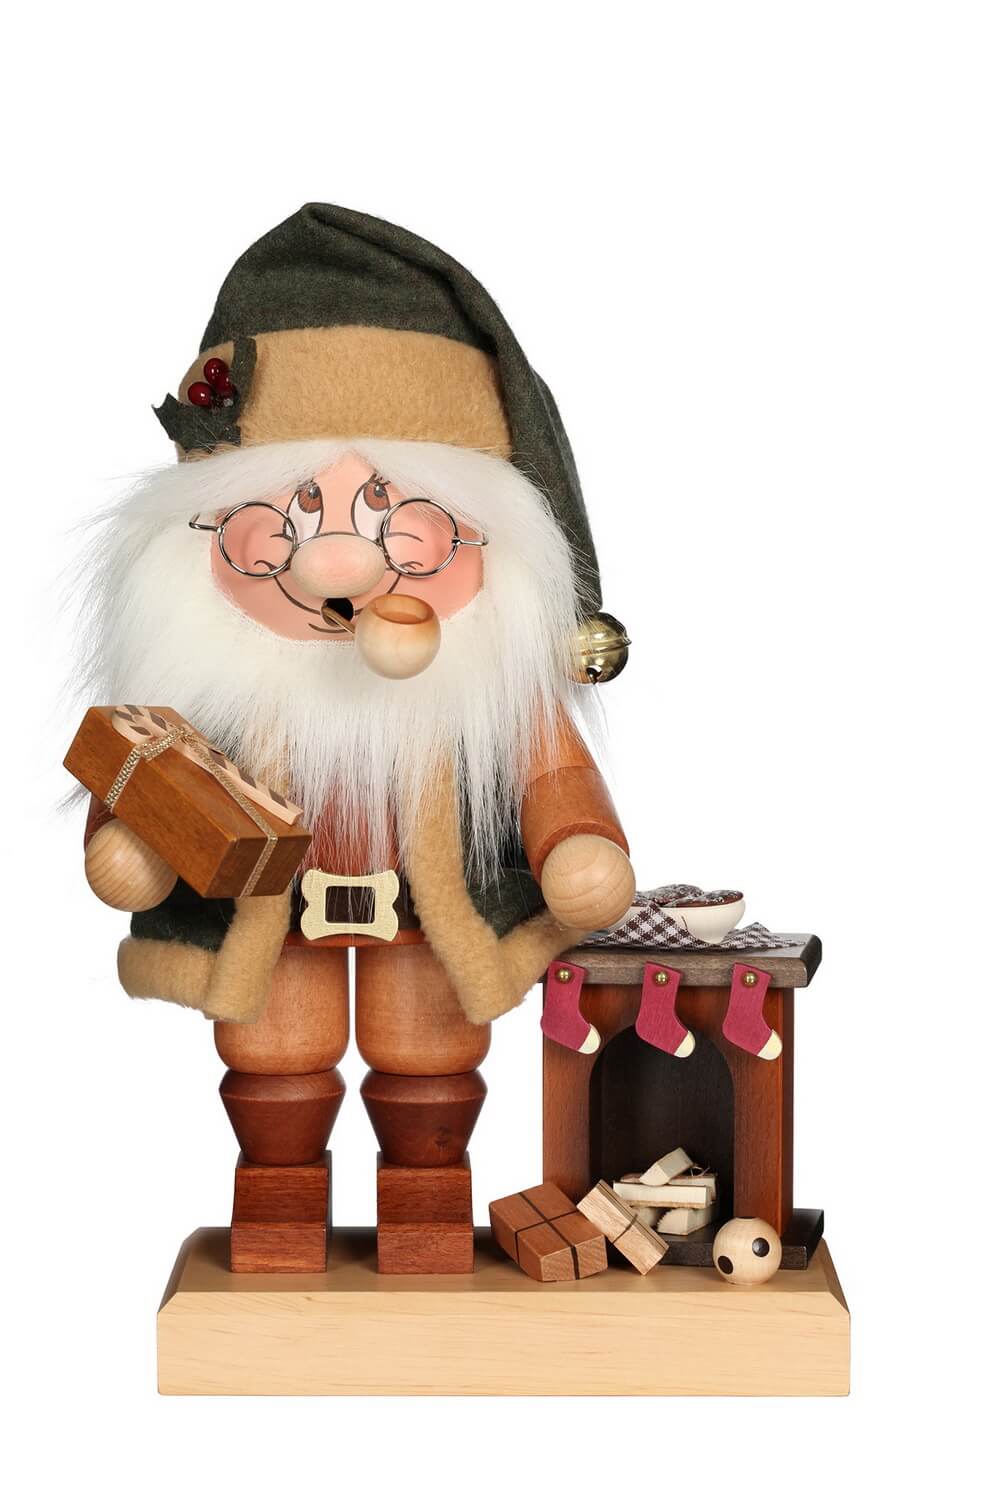 Räuchermännchen Wichtel Weihnachtsmann am Kamin mit seinem freundlichen Gesicht und der typischen Knubbelnase von Christian Ulbricht GmbH & Co KG Seiffen/ …